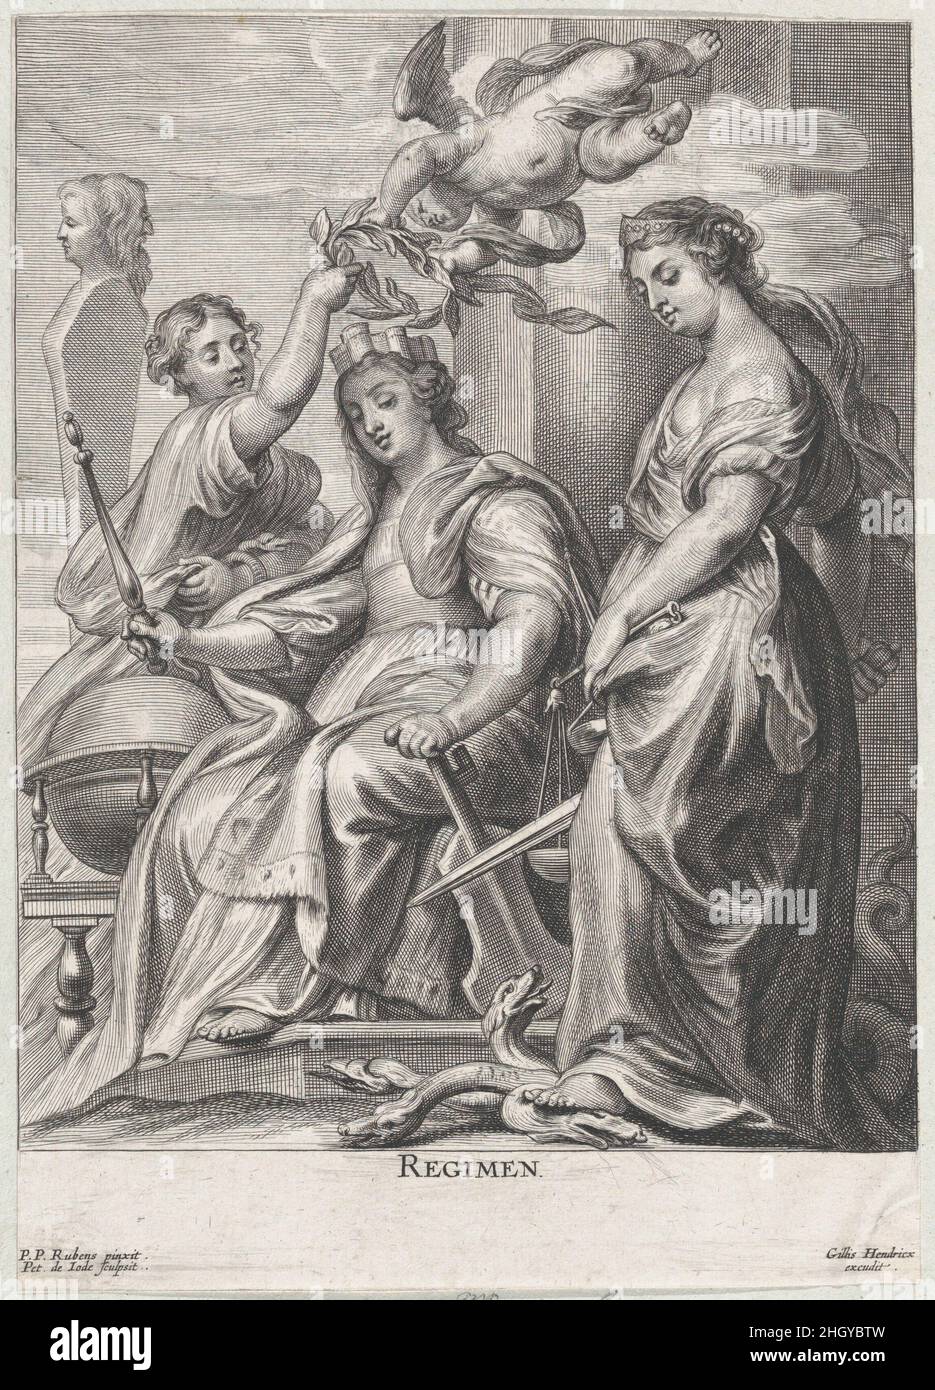 Alegoría de buen gobierno, sentado en el centro y siendo coronado por un putto y una mujer a la izquierda, Justicia de pie encima de un hidra a la derecha ca. 1640–74 Pieter de Jode II Flamenco. Alegoría de buen gobierno, sentado en el centro y siendo coronado por un putto y una mujer a la izquierda, Justicia de pie sobre un hidra a la derecha. Pieter de Jode II (flamenco, 1606-ca. 1674). aprox. 1640–74. Grabado. Gillis Hendricx (flamenco, activo 1640–1677). Impresiones Foto de stock